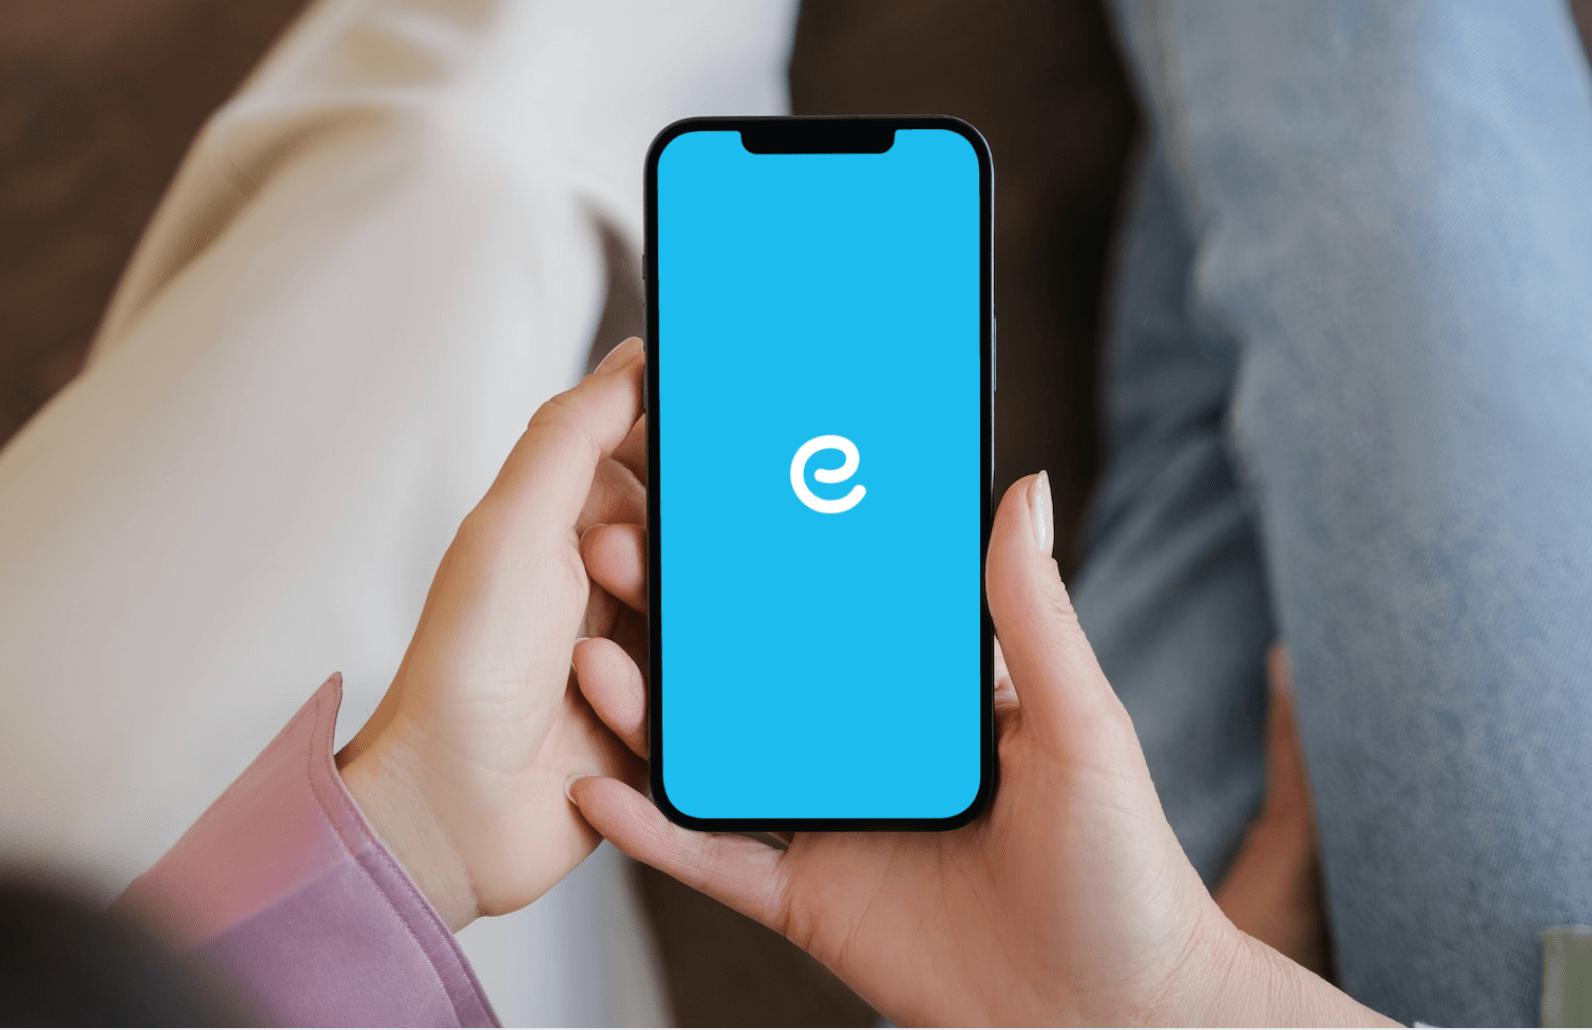 Osoba trzyma smartfon z niebieskim ekranem wyświetlającym literę "e" na środku.